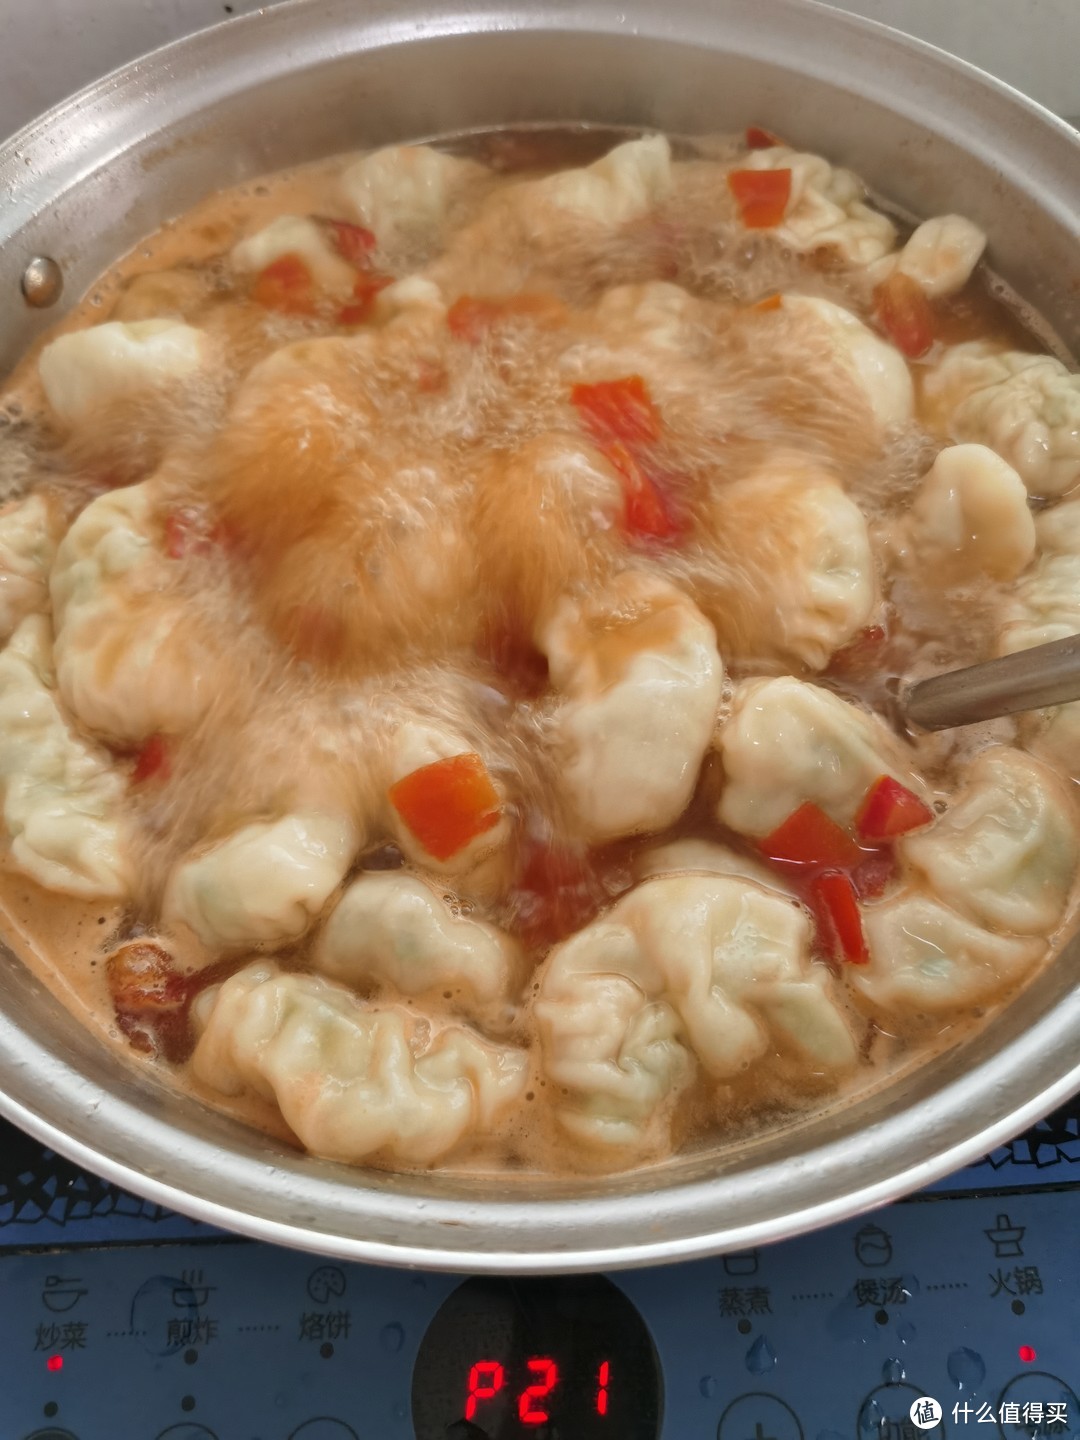 分享一个饺子煮不烂的秘方